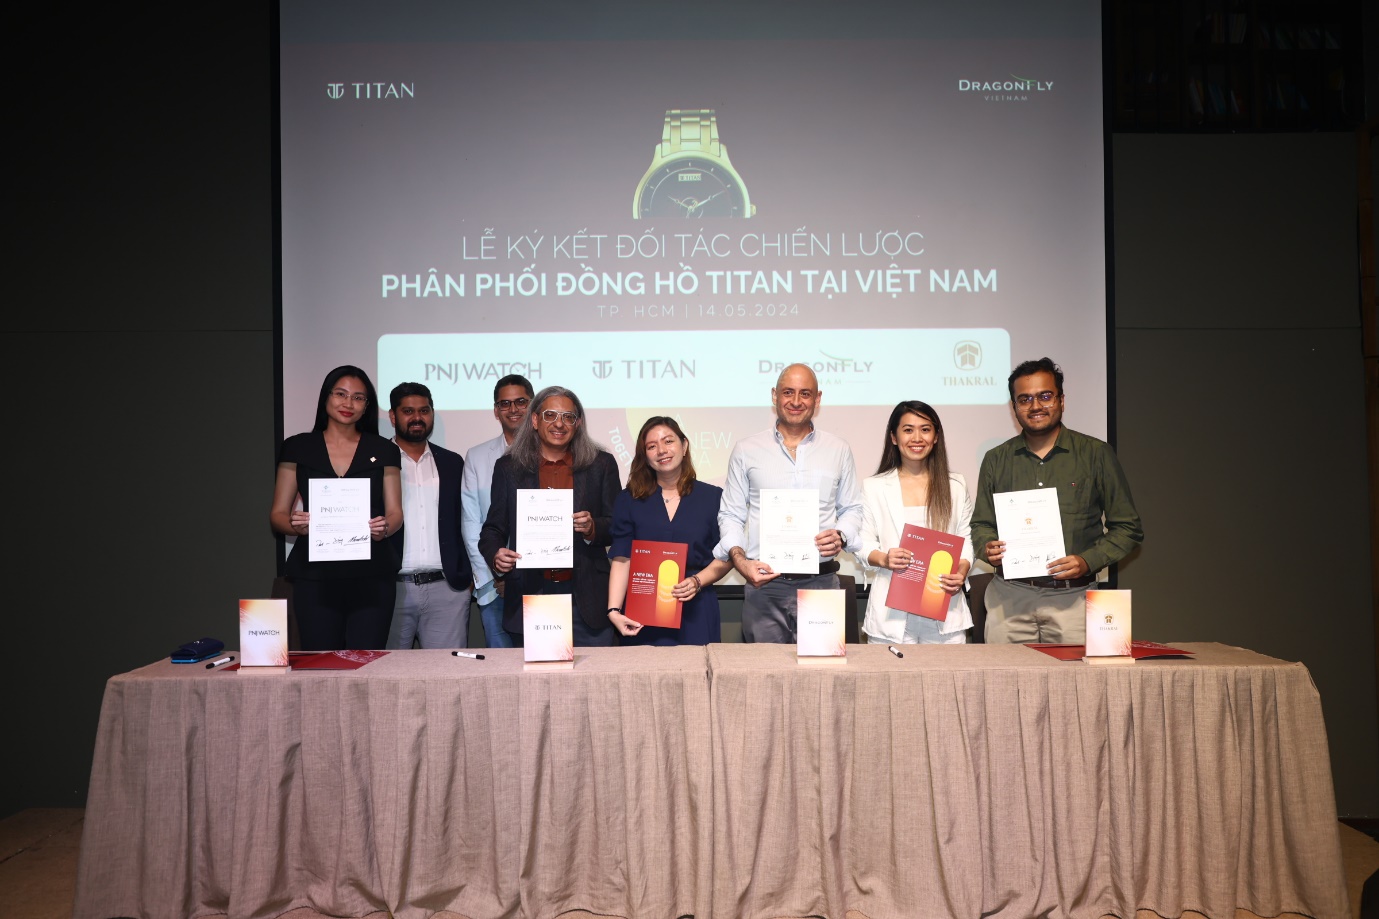 Hội nghị "3T": Together - Towards - Tomorrow đánh dấu một kỷ nguyên mới của thương hiệu Titan tại Việt Nam - 3